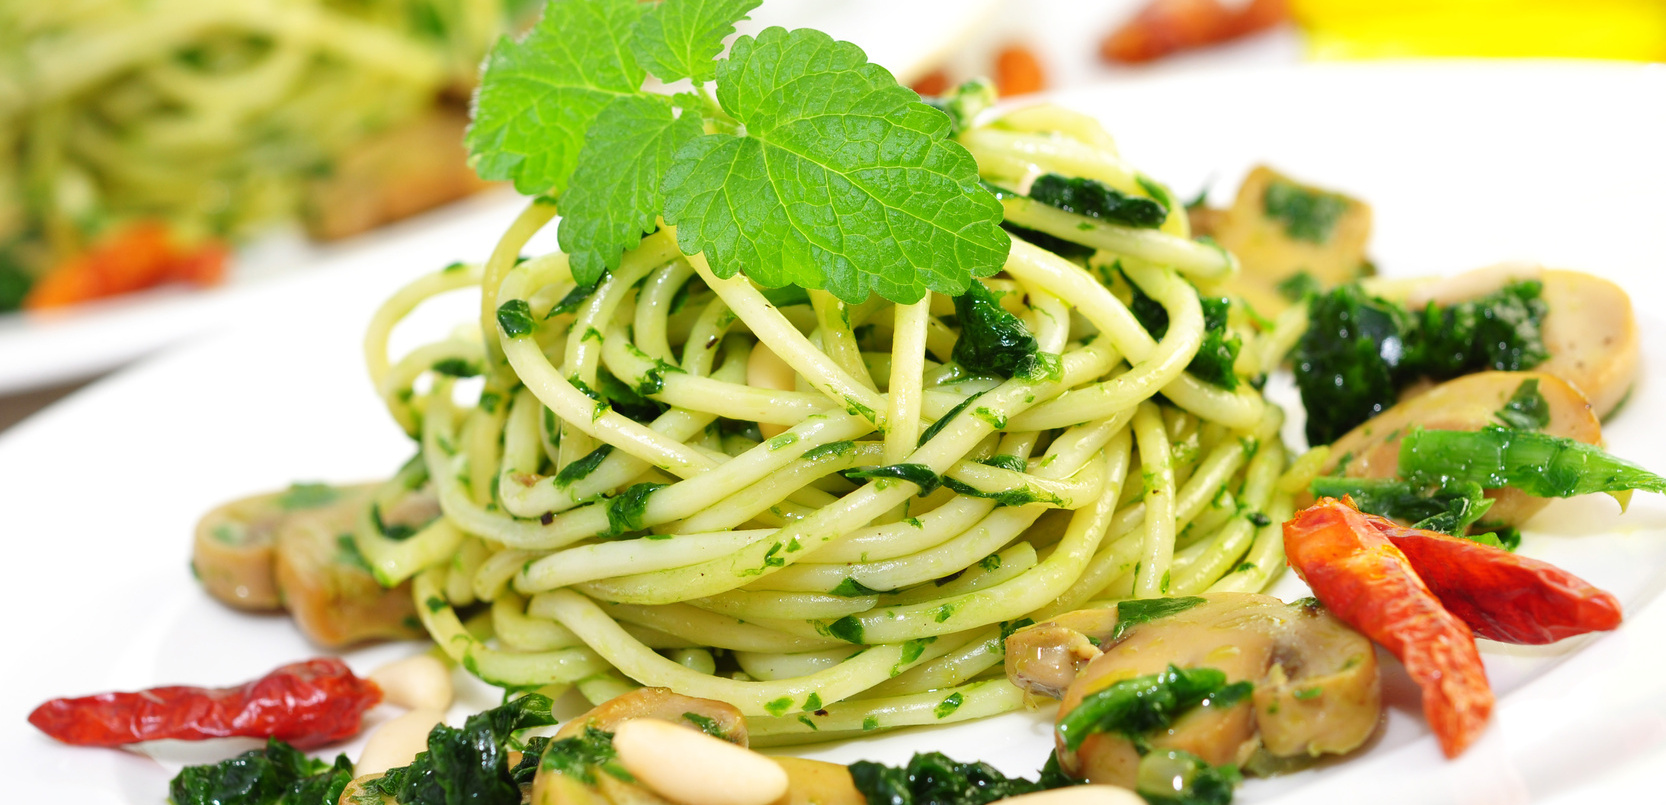 Das Ganze in grün: Nudeln mit Spinat. Der hohe Gehalt an Eisen und Vitamin C macht das grüne Blattgemüse besonders nahrhaft. 